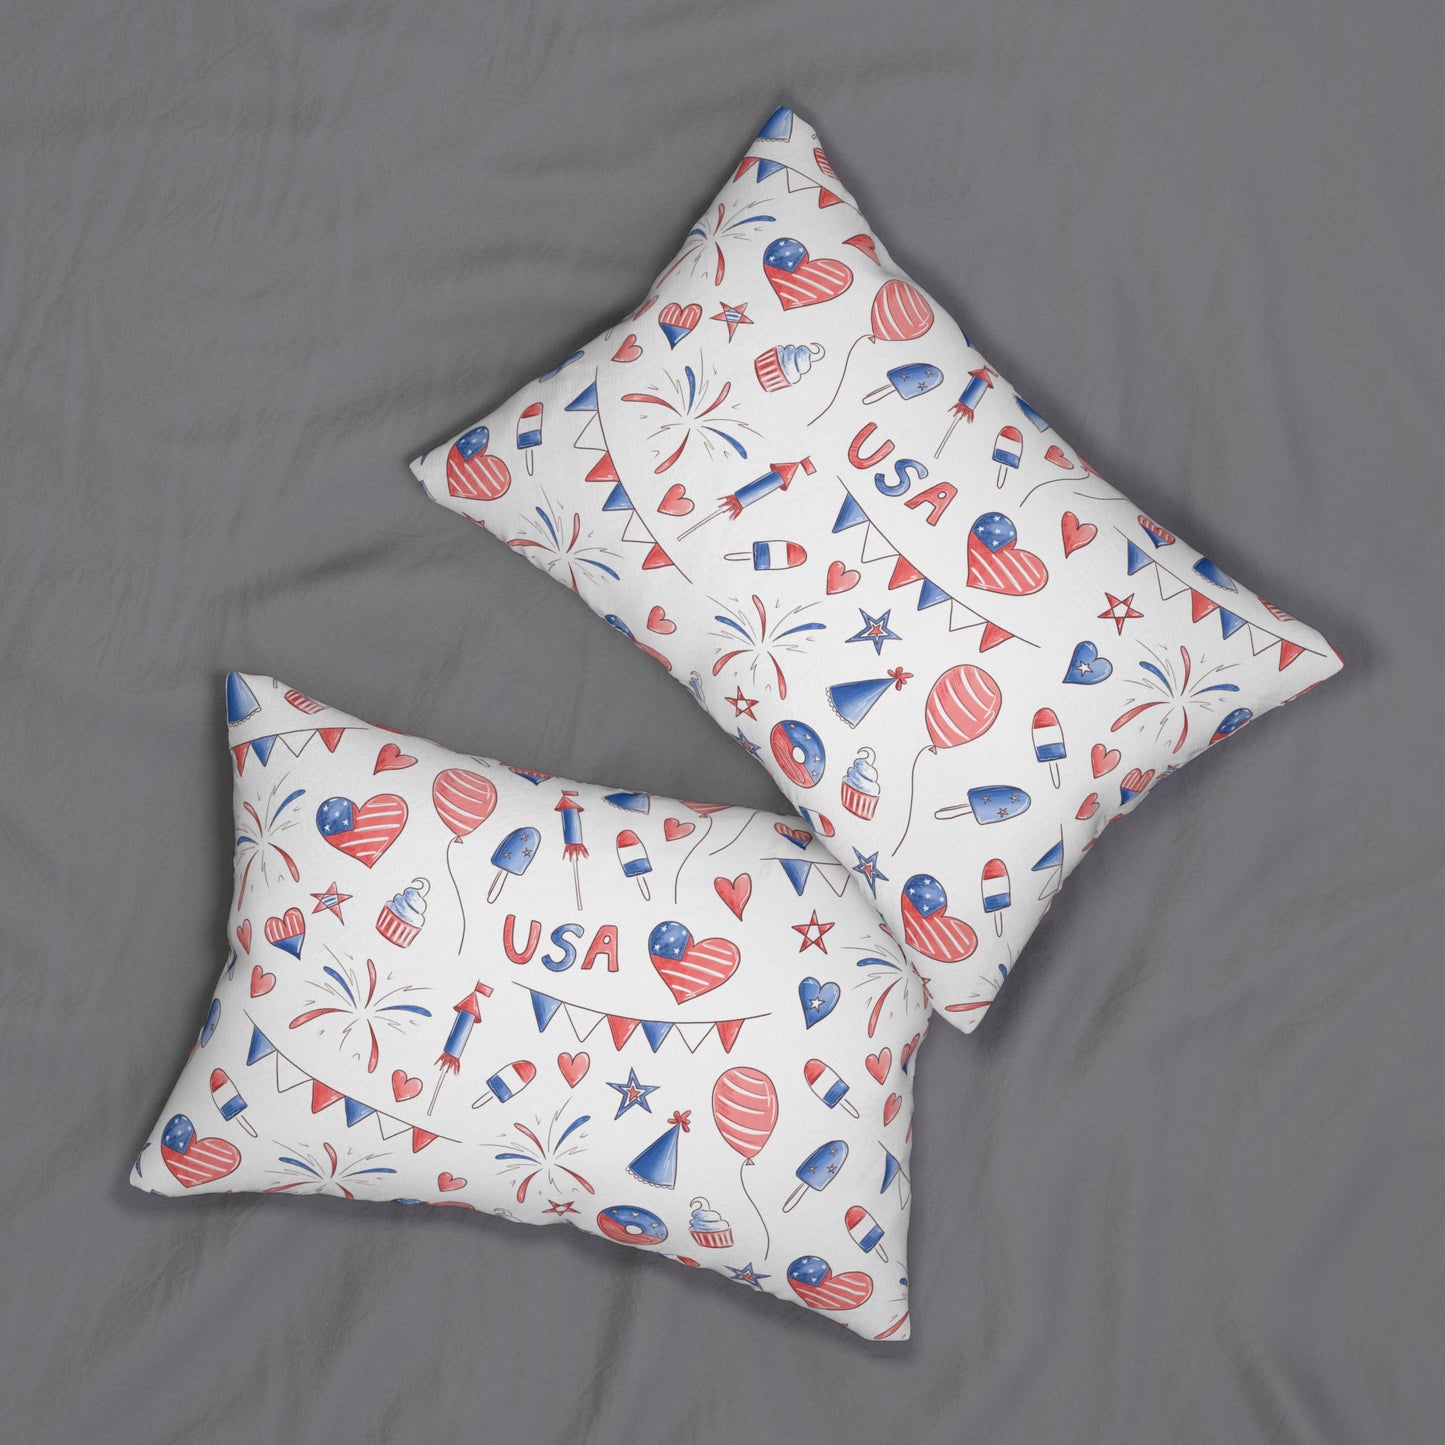 Banners and Donuts Spun Polyester Lumbar Pillow